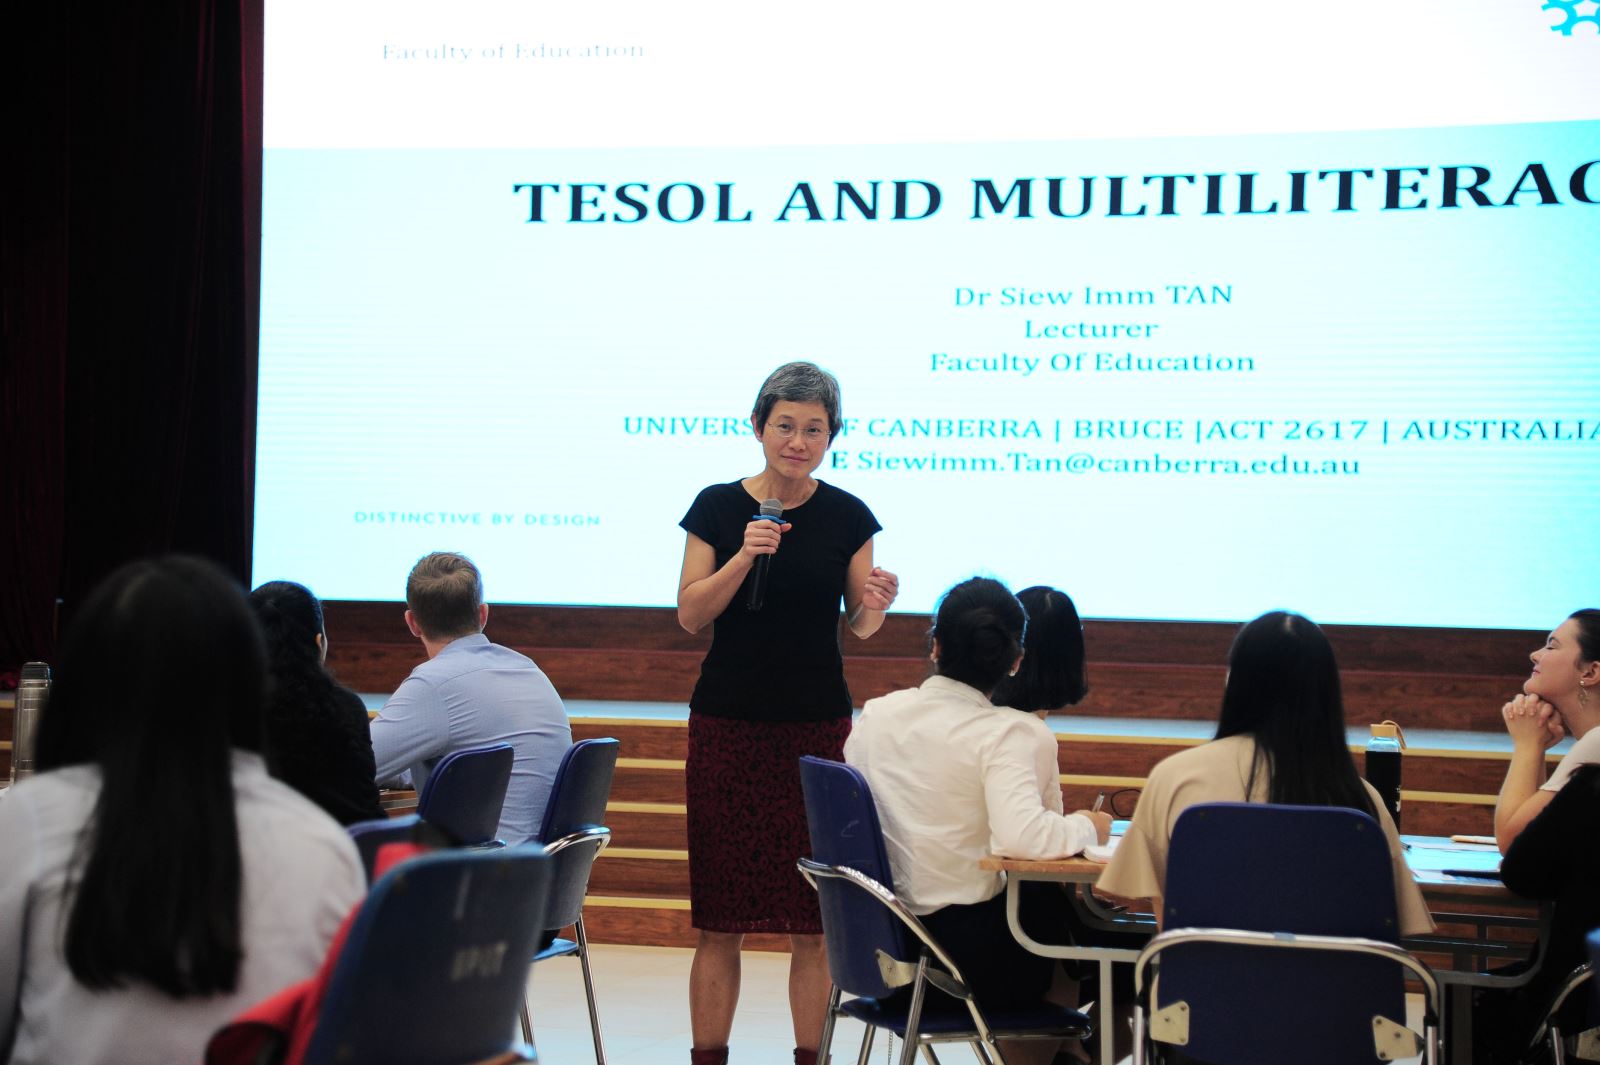 Hội thảo Multiliteracies and TESOL dành cho giáo viên Cambridge